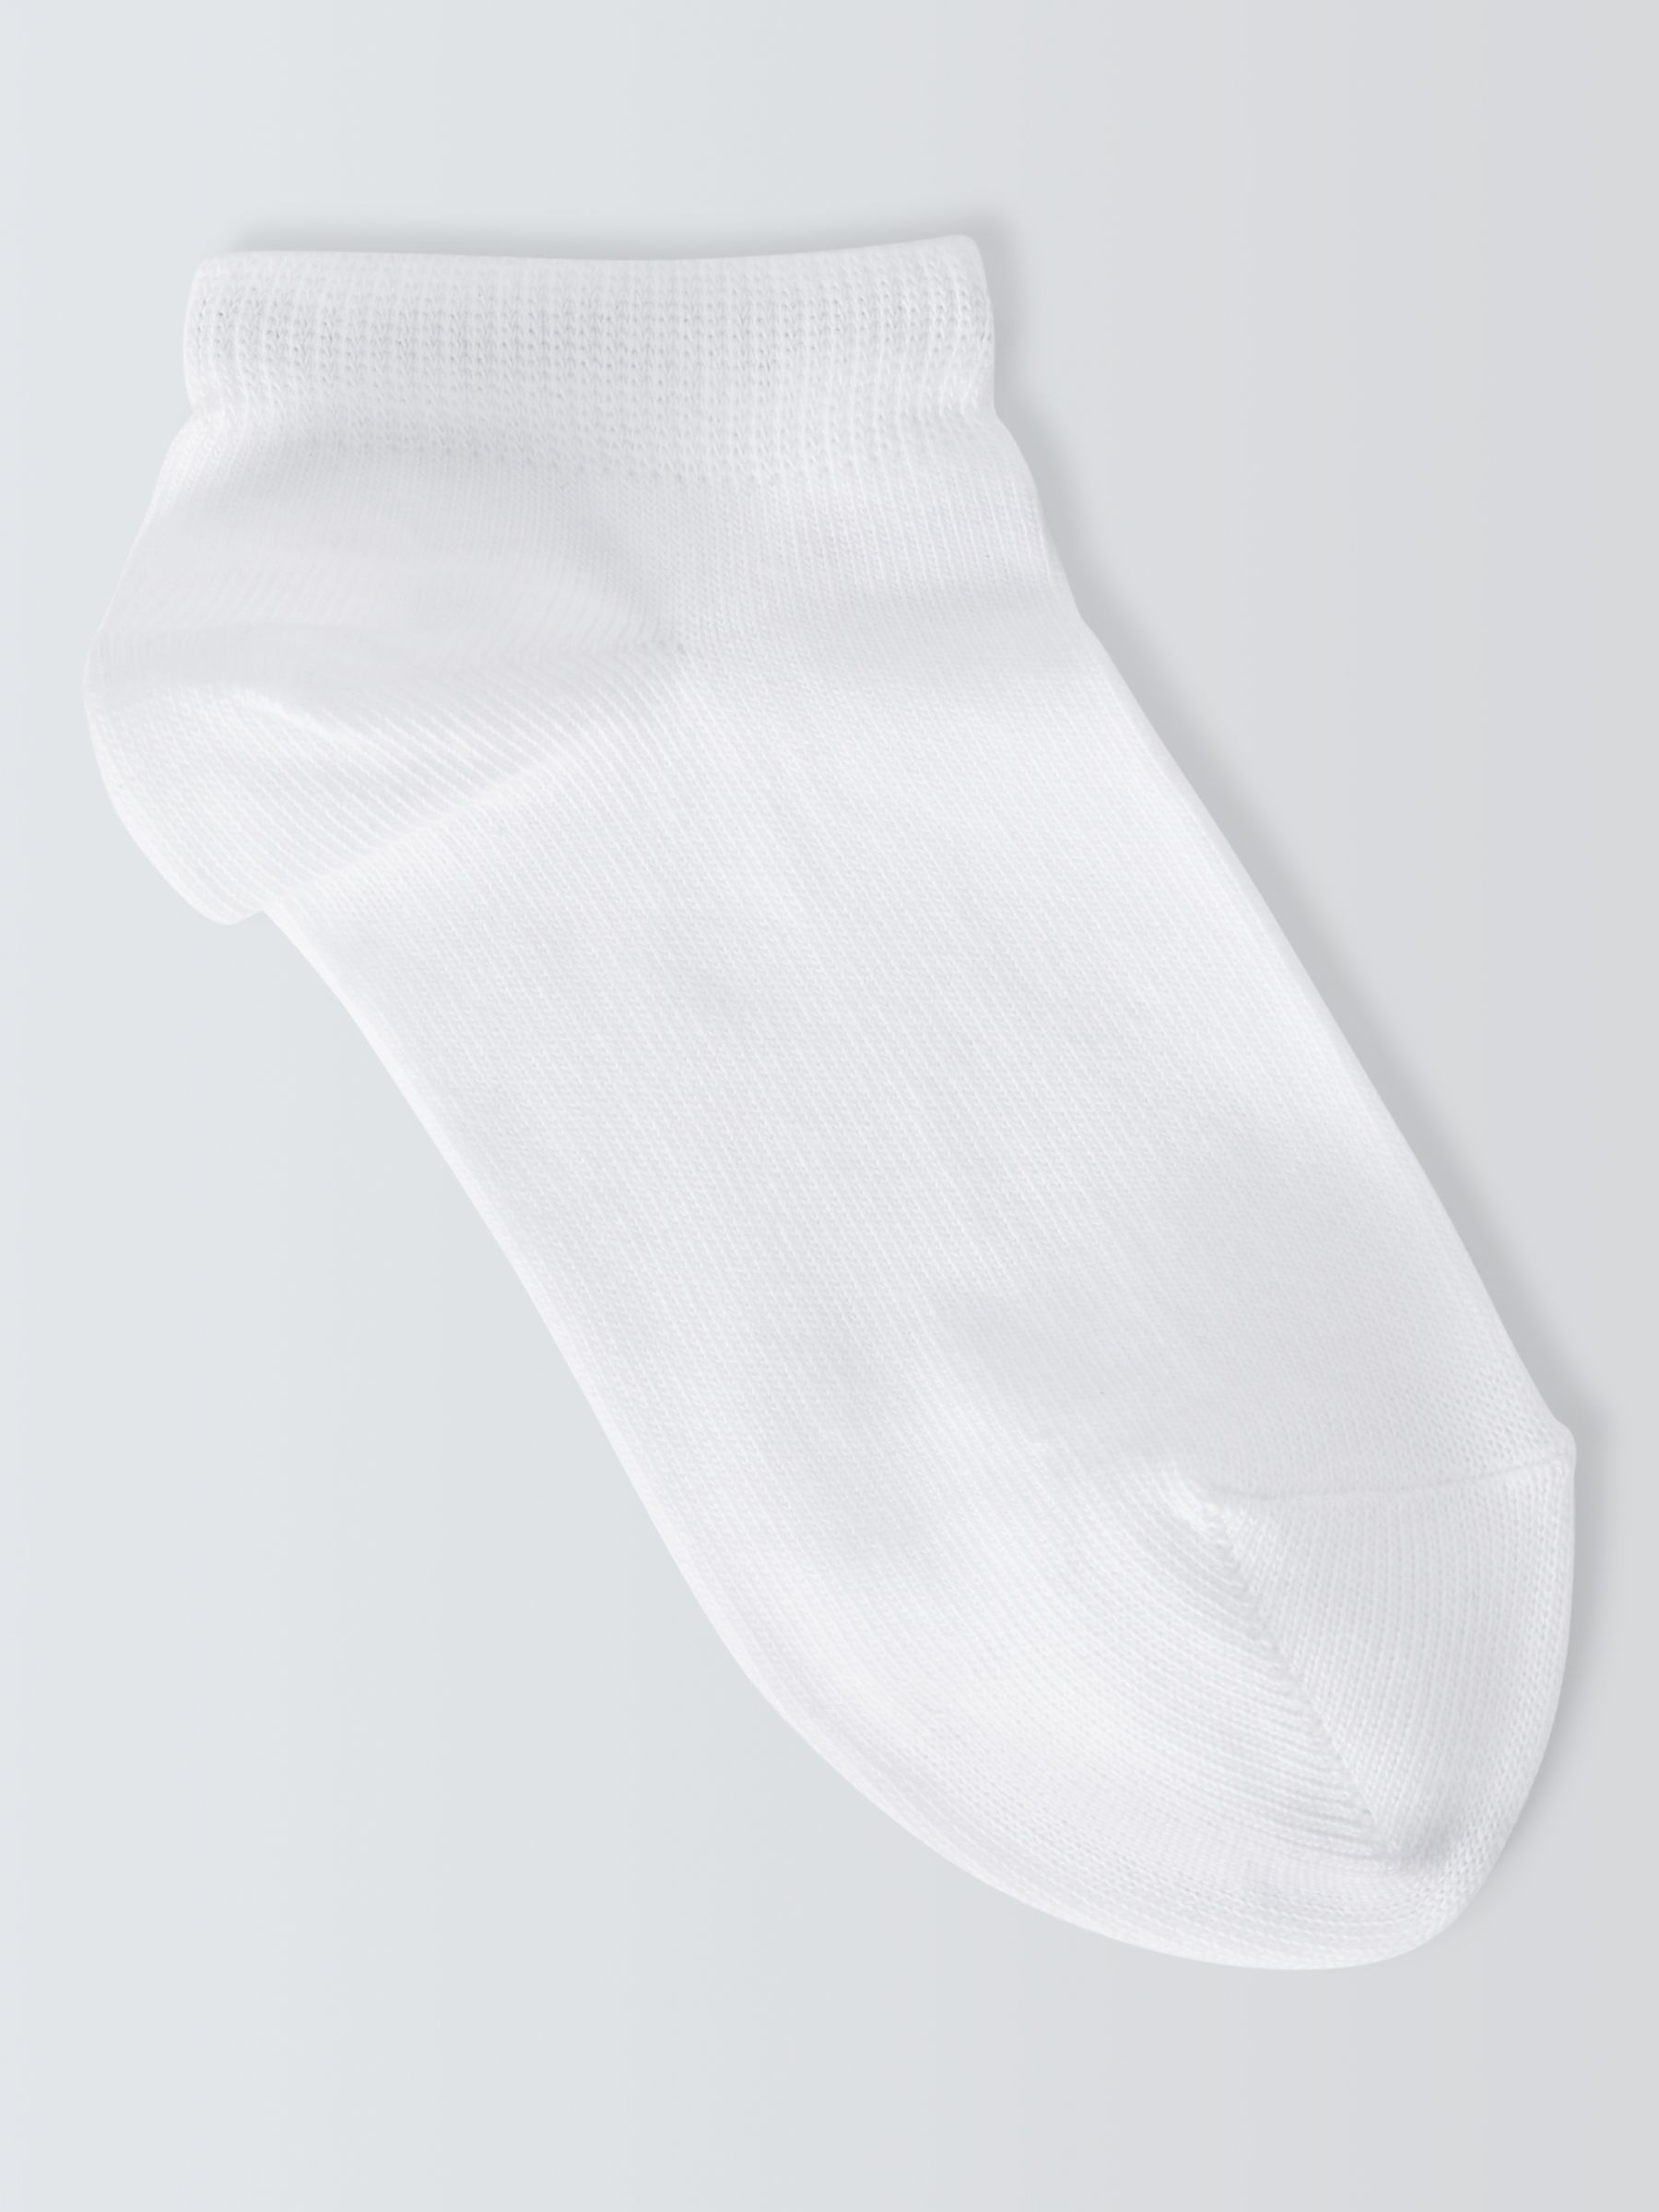 John Lewis Kids' Trainer Liner Socks, Pack of 7, White, 4-7